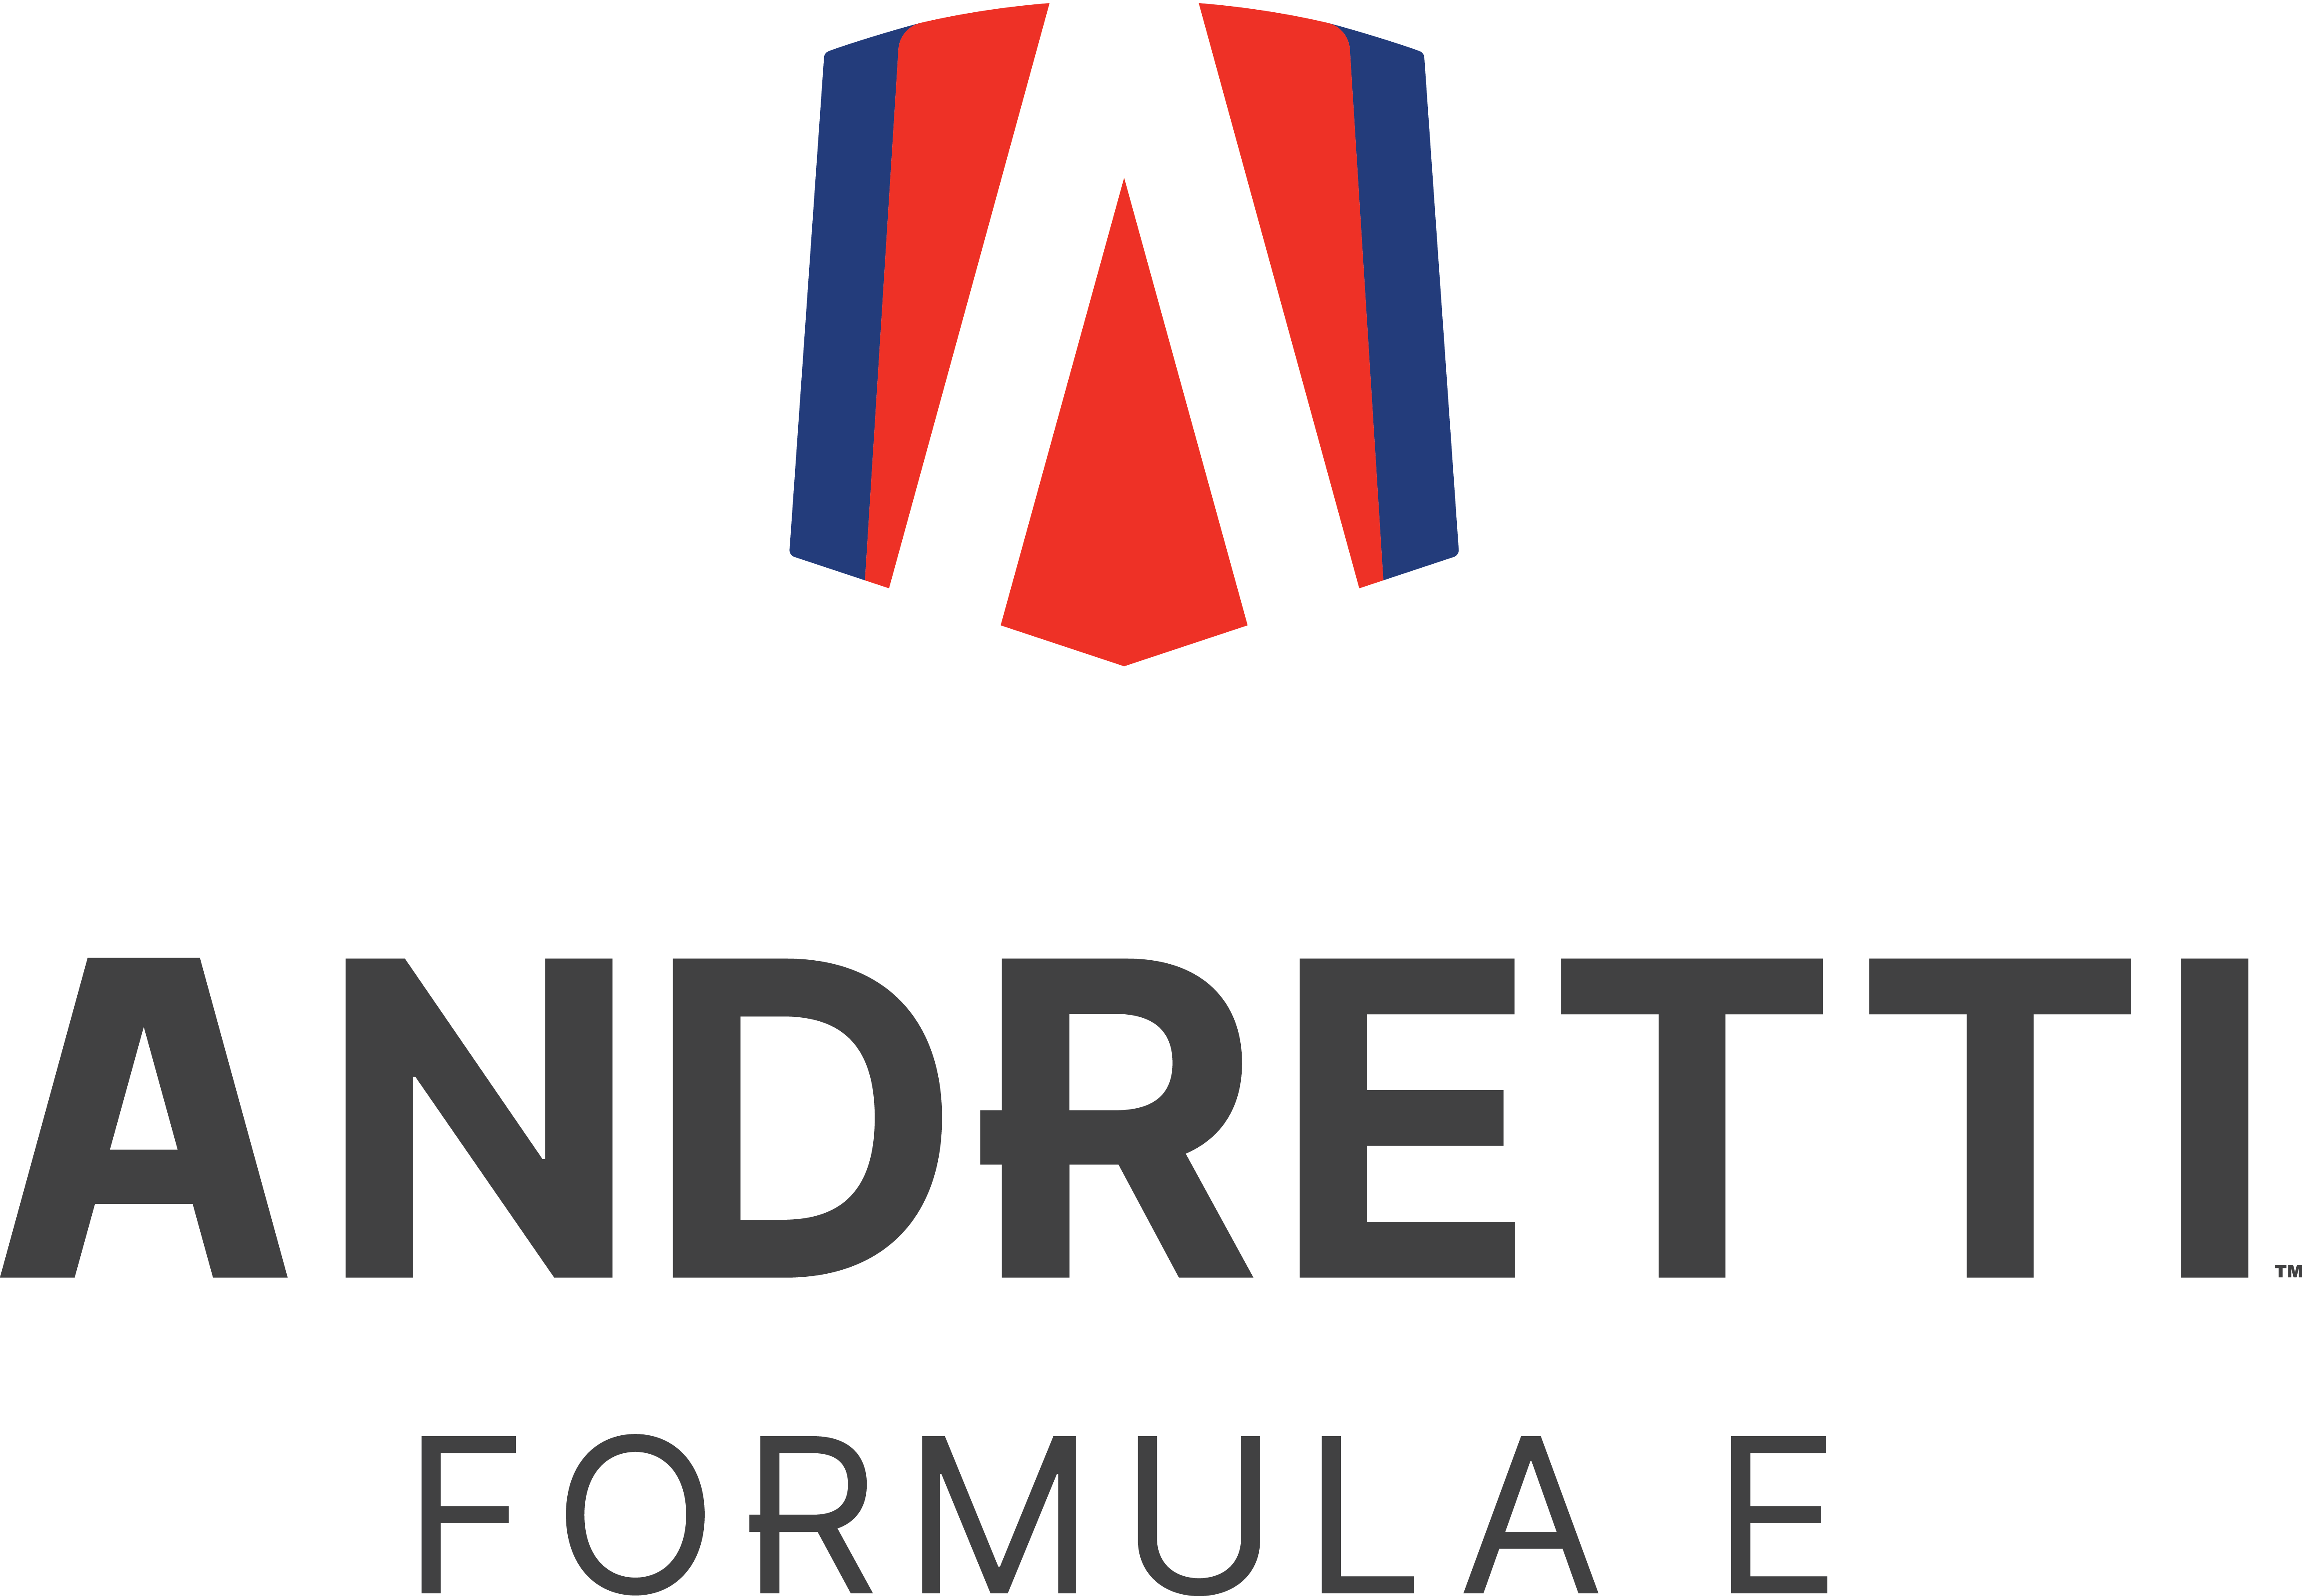 Andretti Formula E Team logo